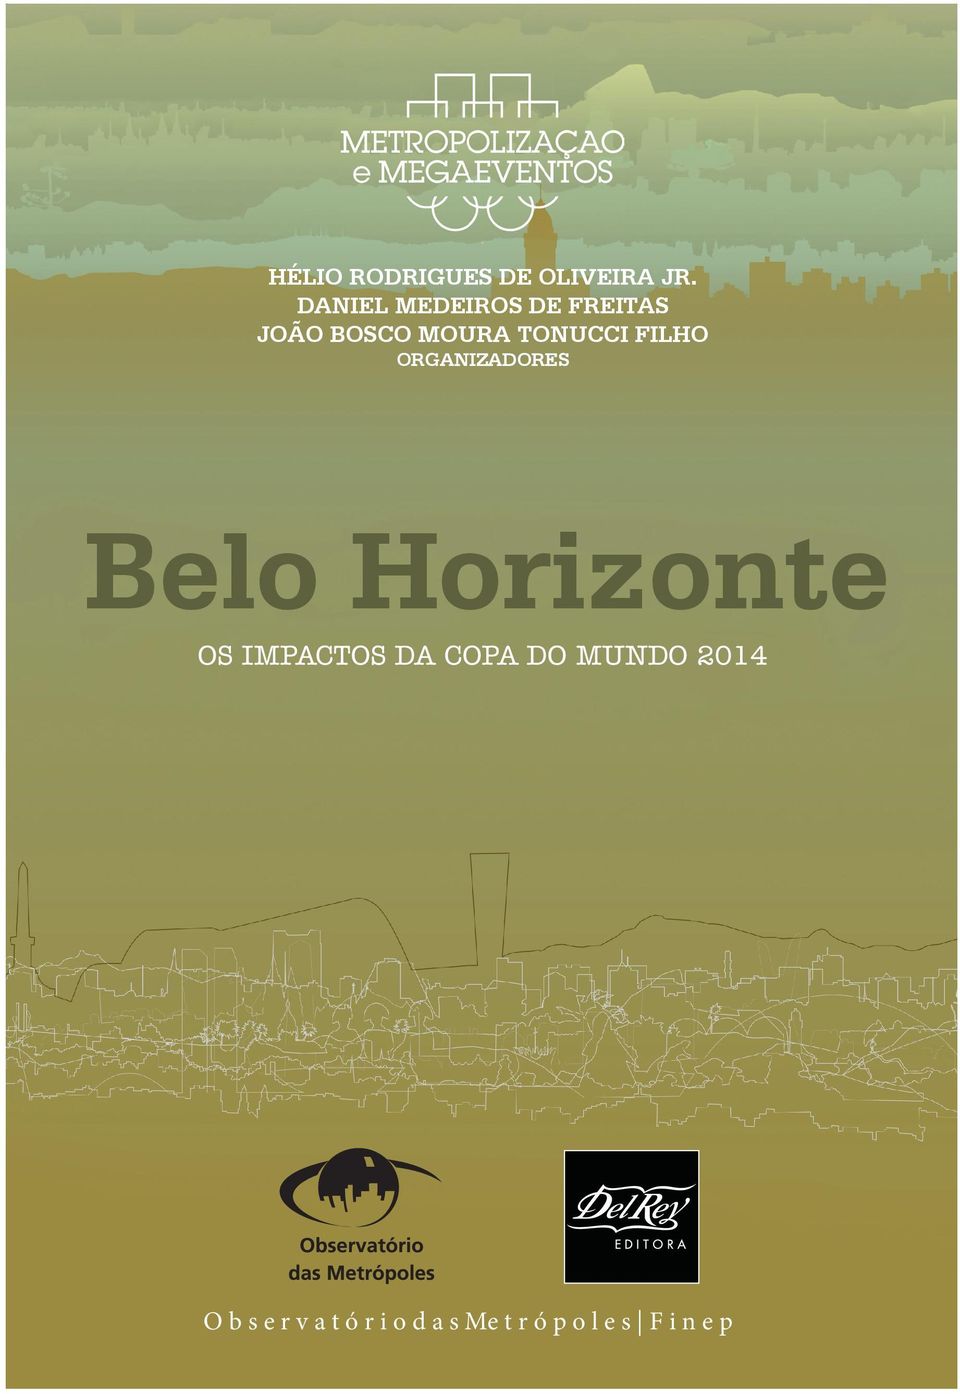 Núcleo Belo Horizonte do Projeto Metropolização e Megaeventos Intervenções de mobilidade urbana associadas à Copa de 2014 e especificidades do caso de Belo Horizonte.